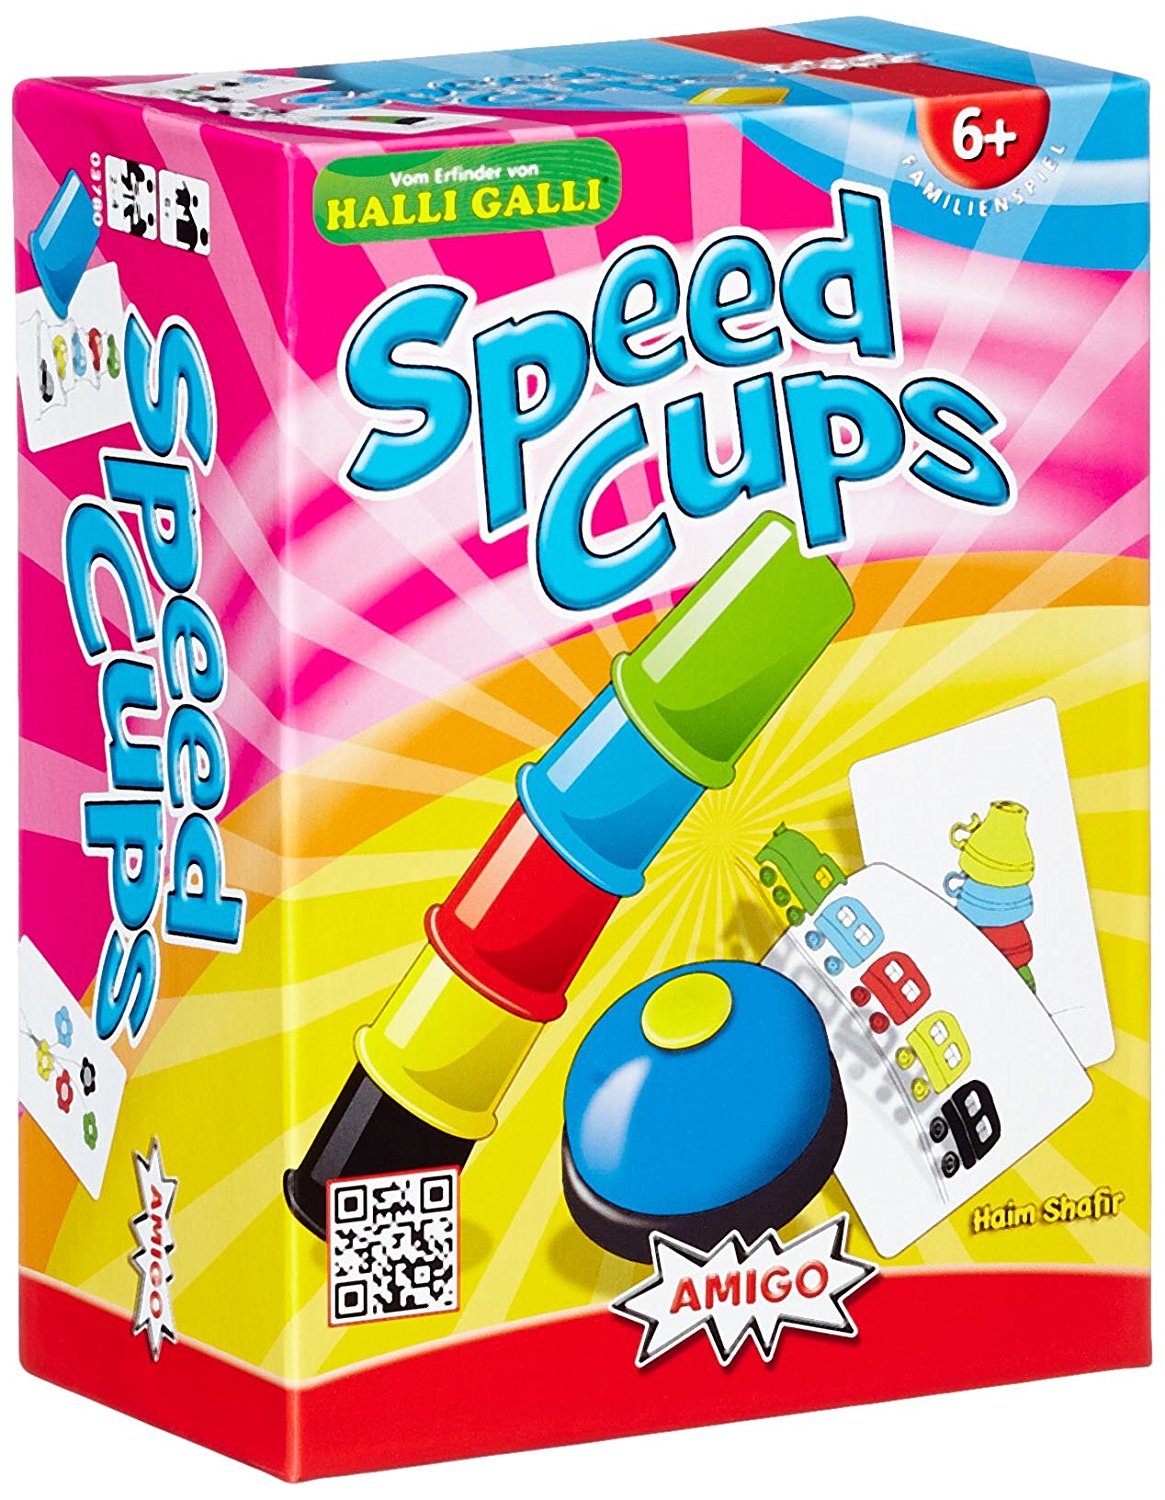 spiele für 6 jährige kinder spiele für kinder ab 6 kinderspiele ab 6 jahren speed cups halli galli